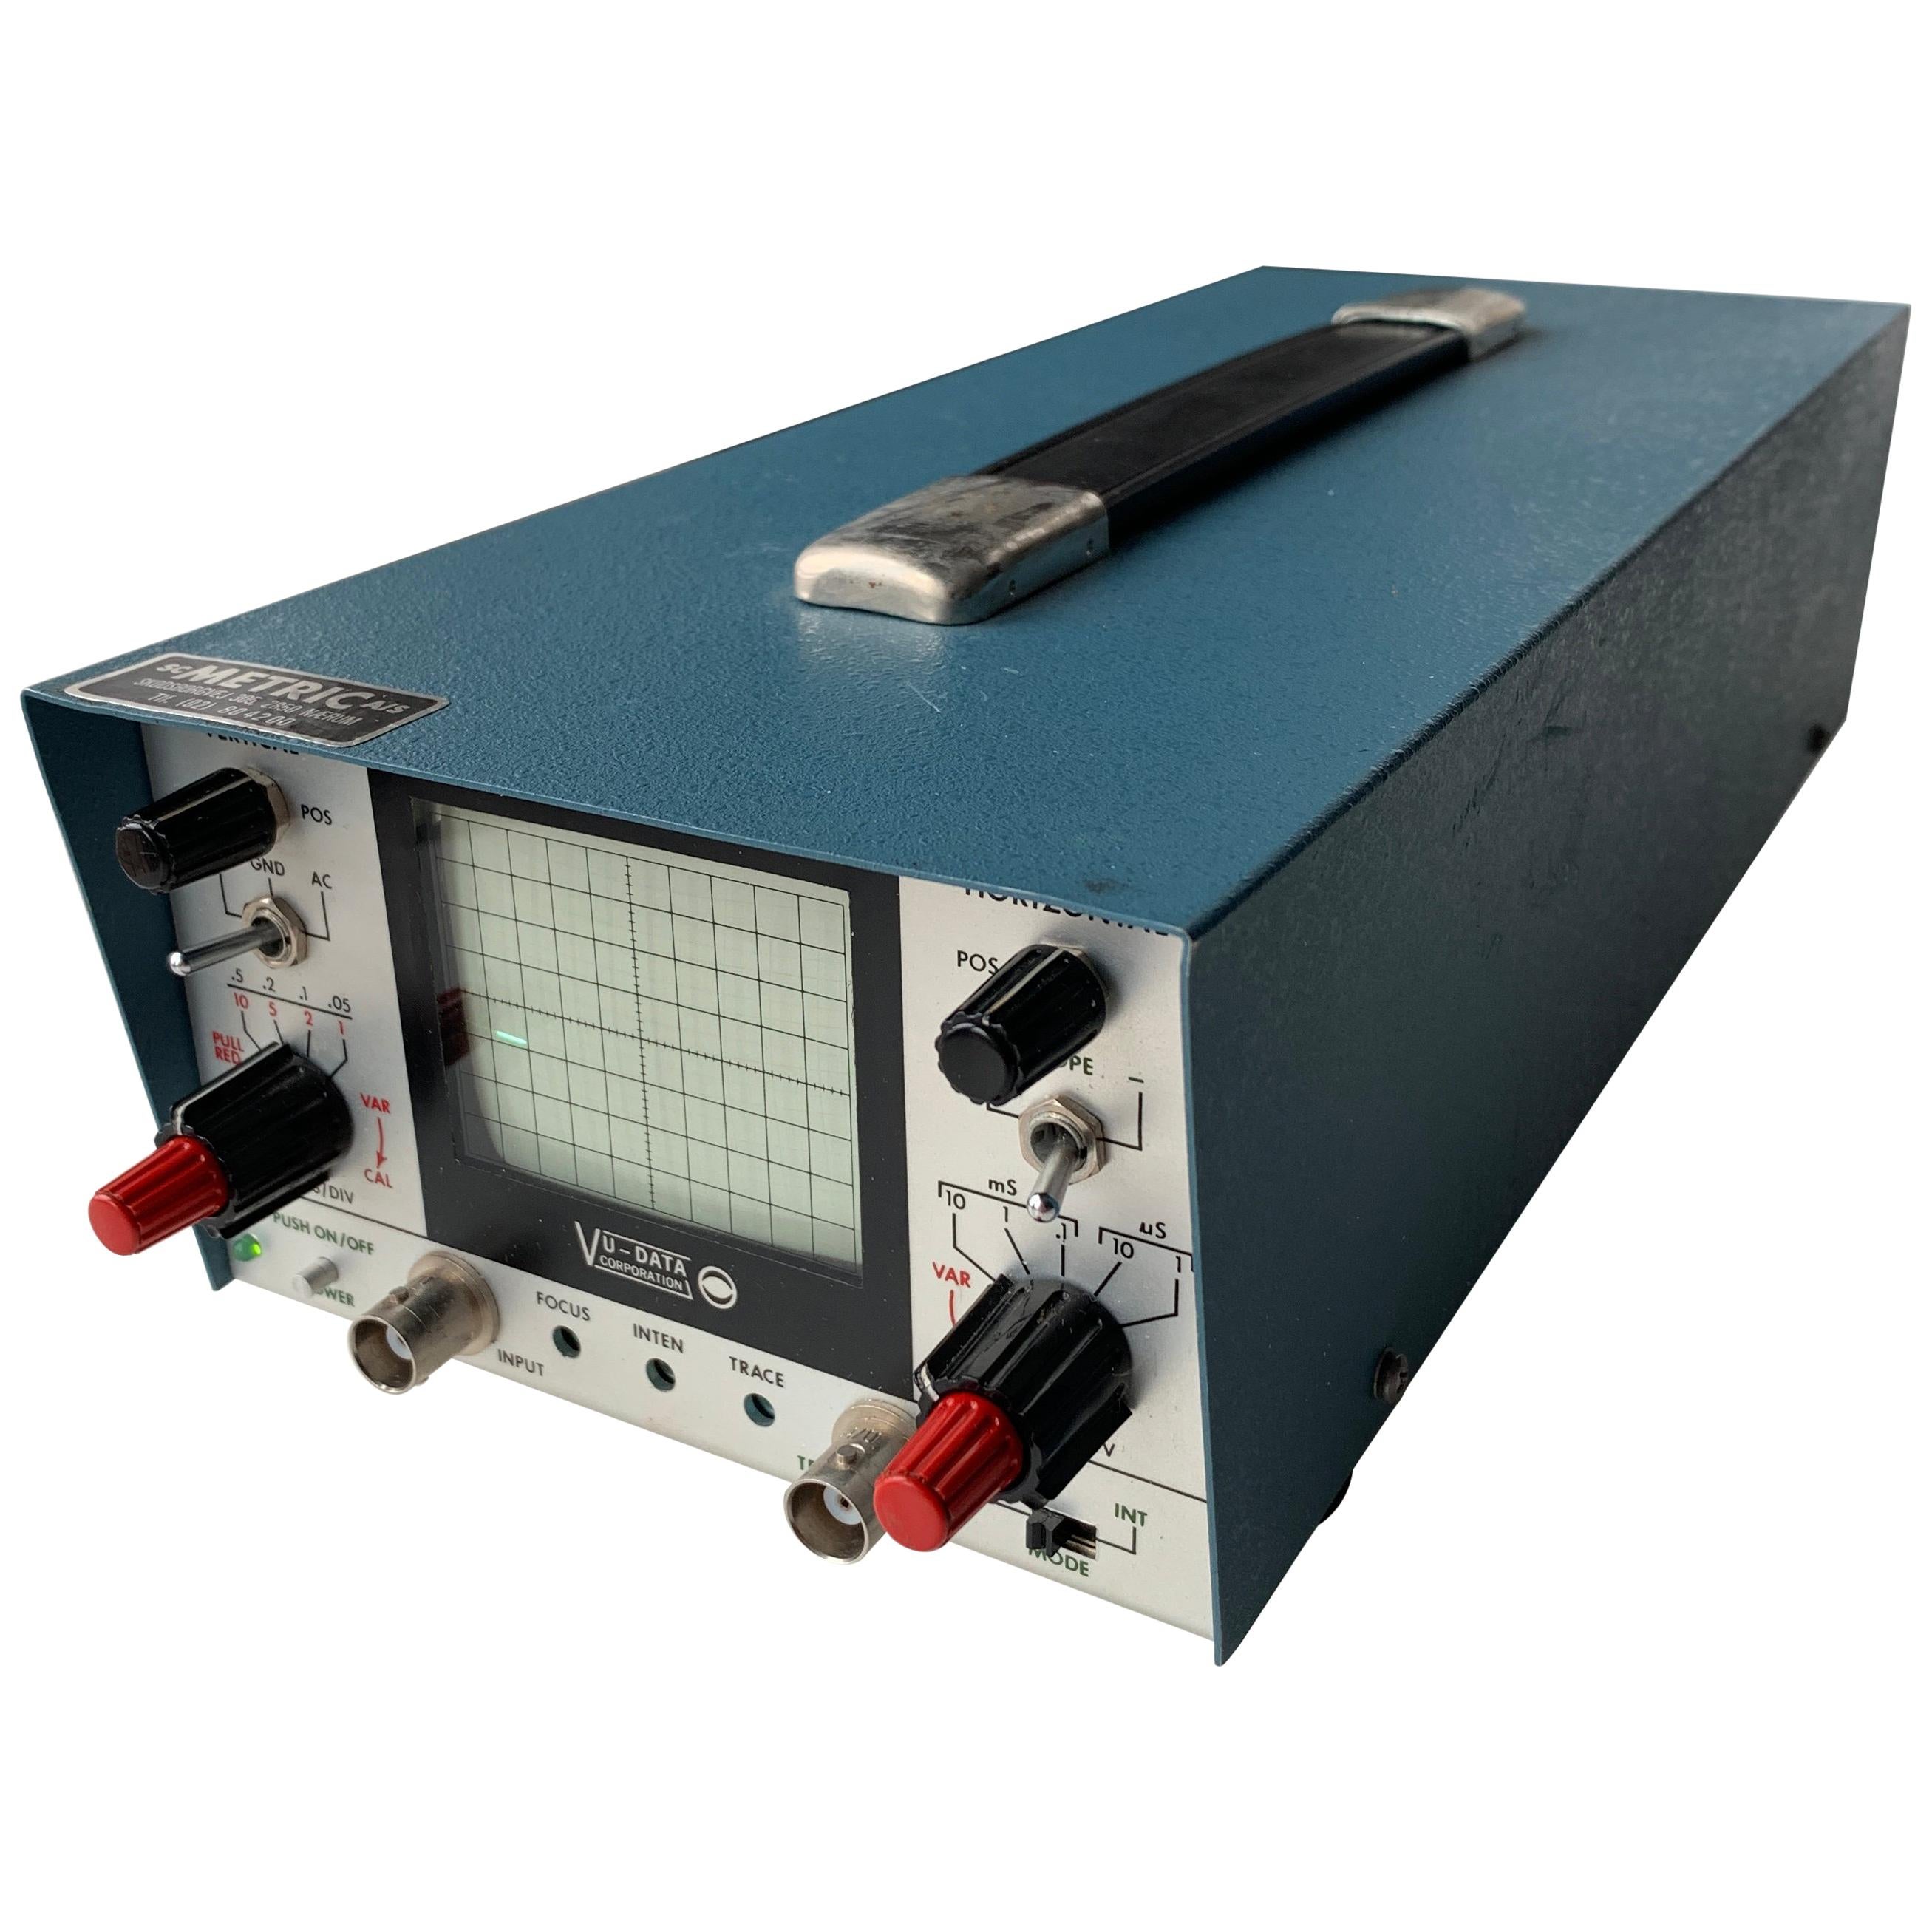 VU DATA Corporation Series PS121 Mini-Portable Oscilloscope For Sale